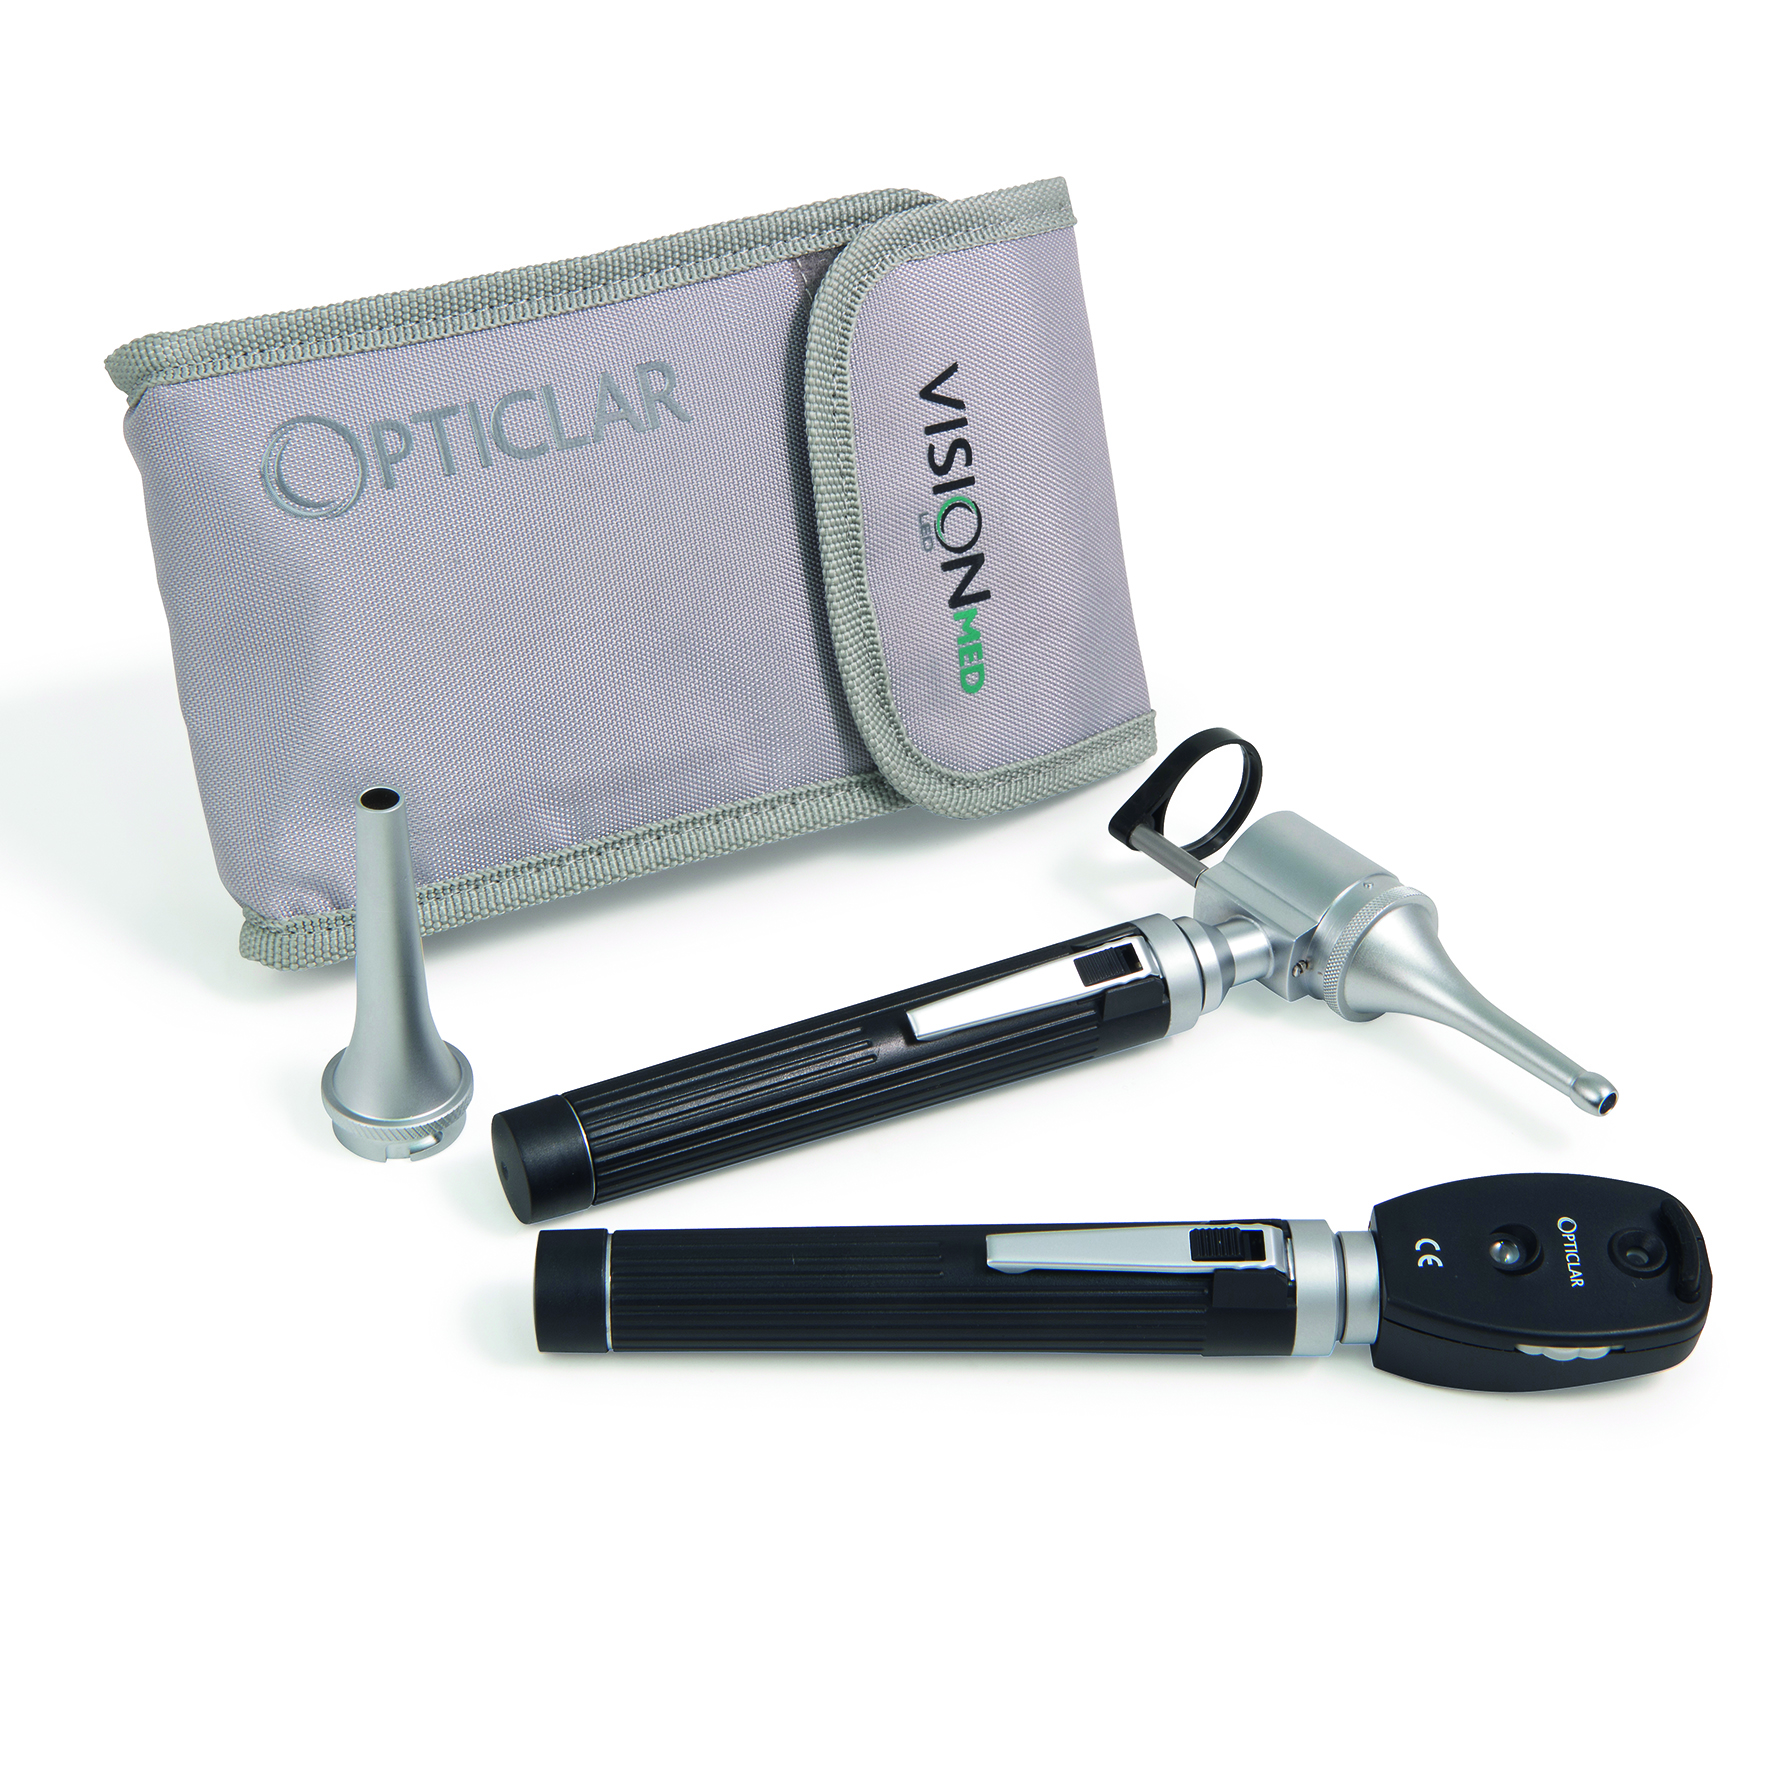 Opticlar Pocket Veterinary Diagnostic Sets